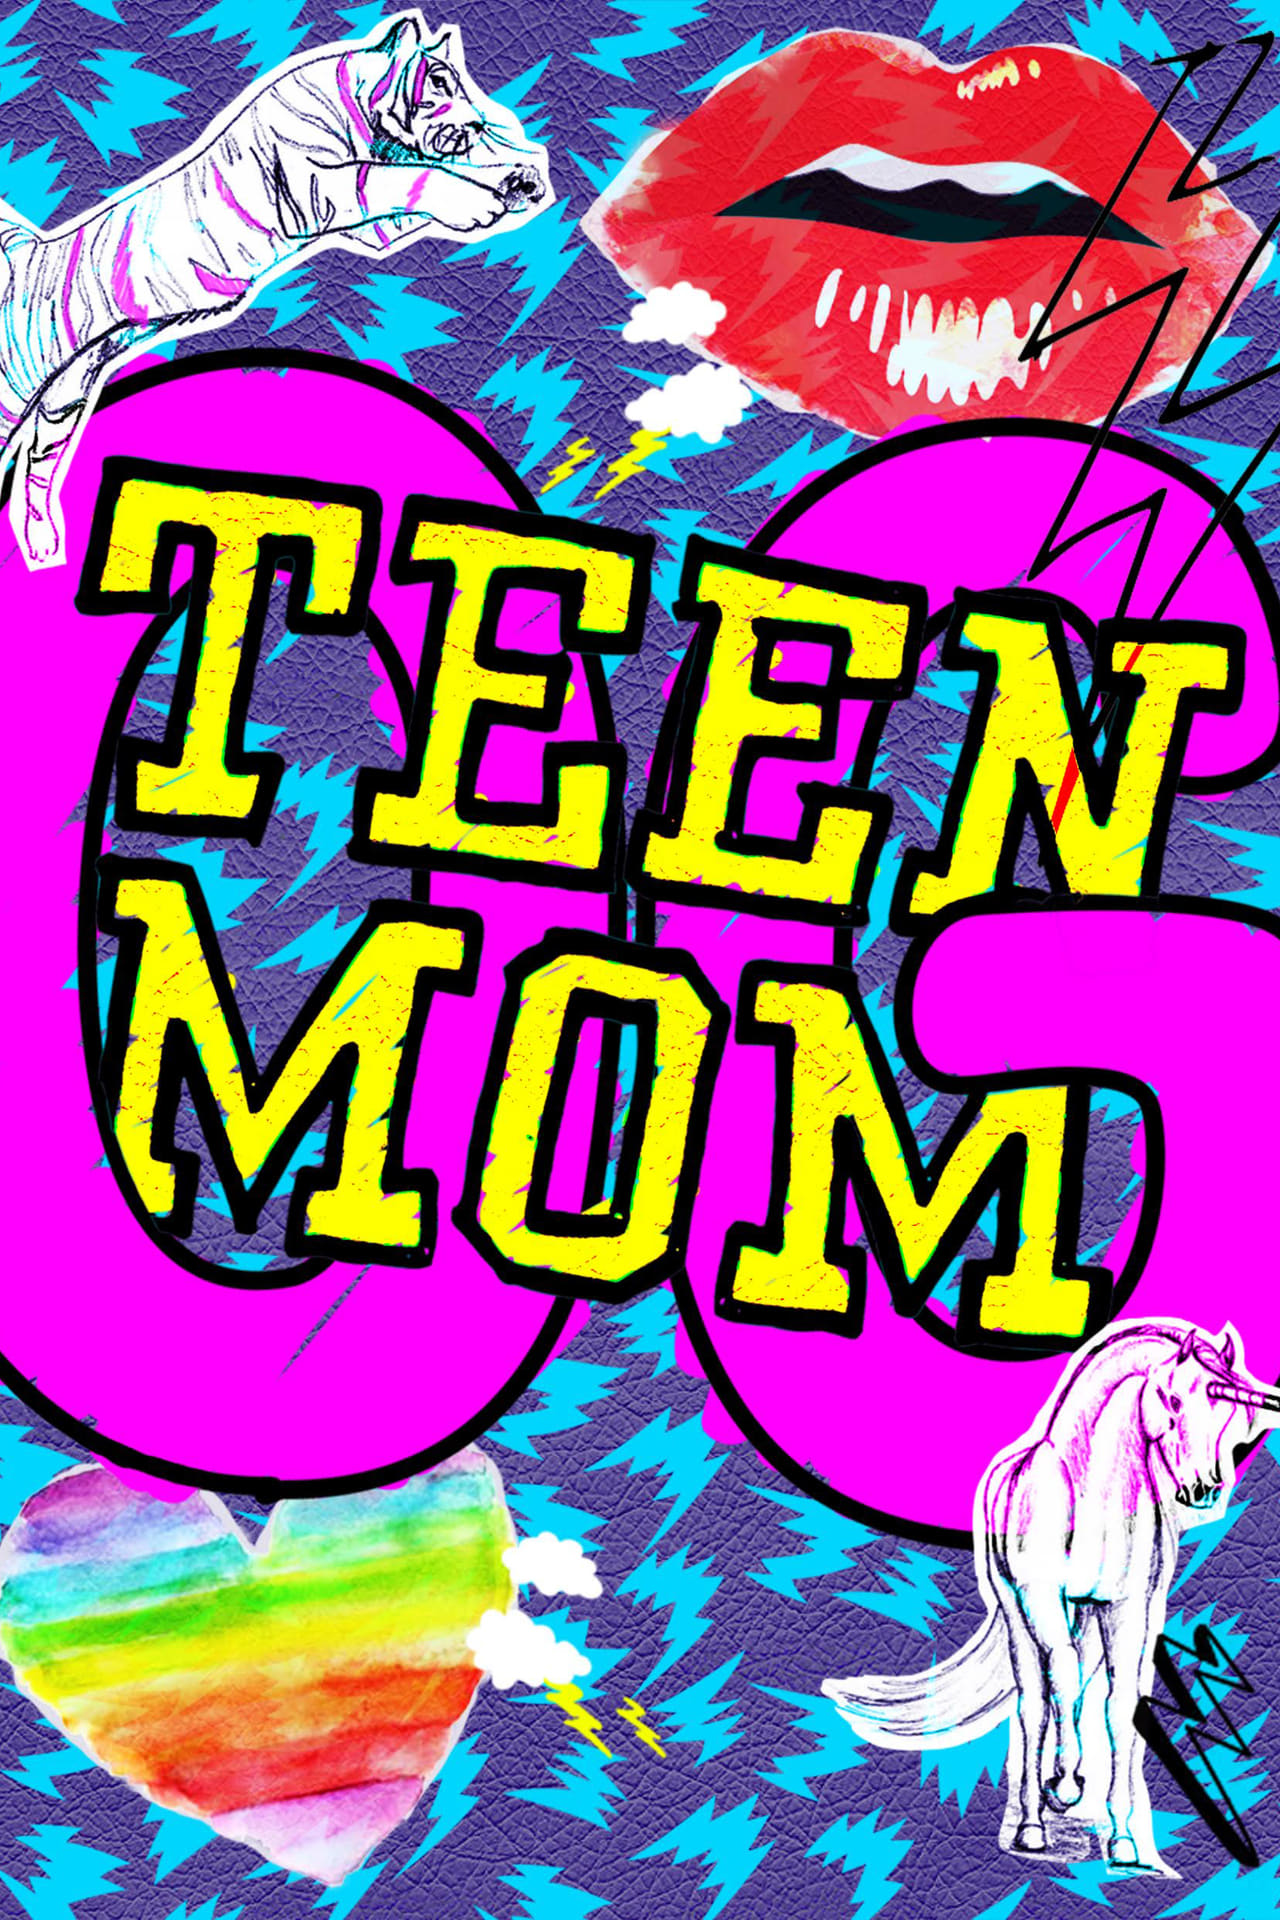 Teen Mom Season 4